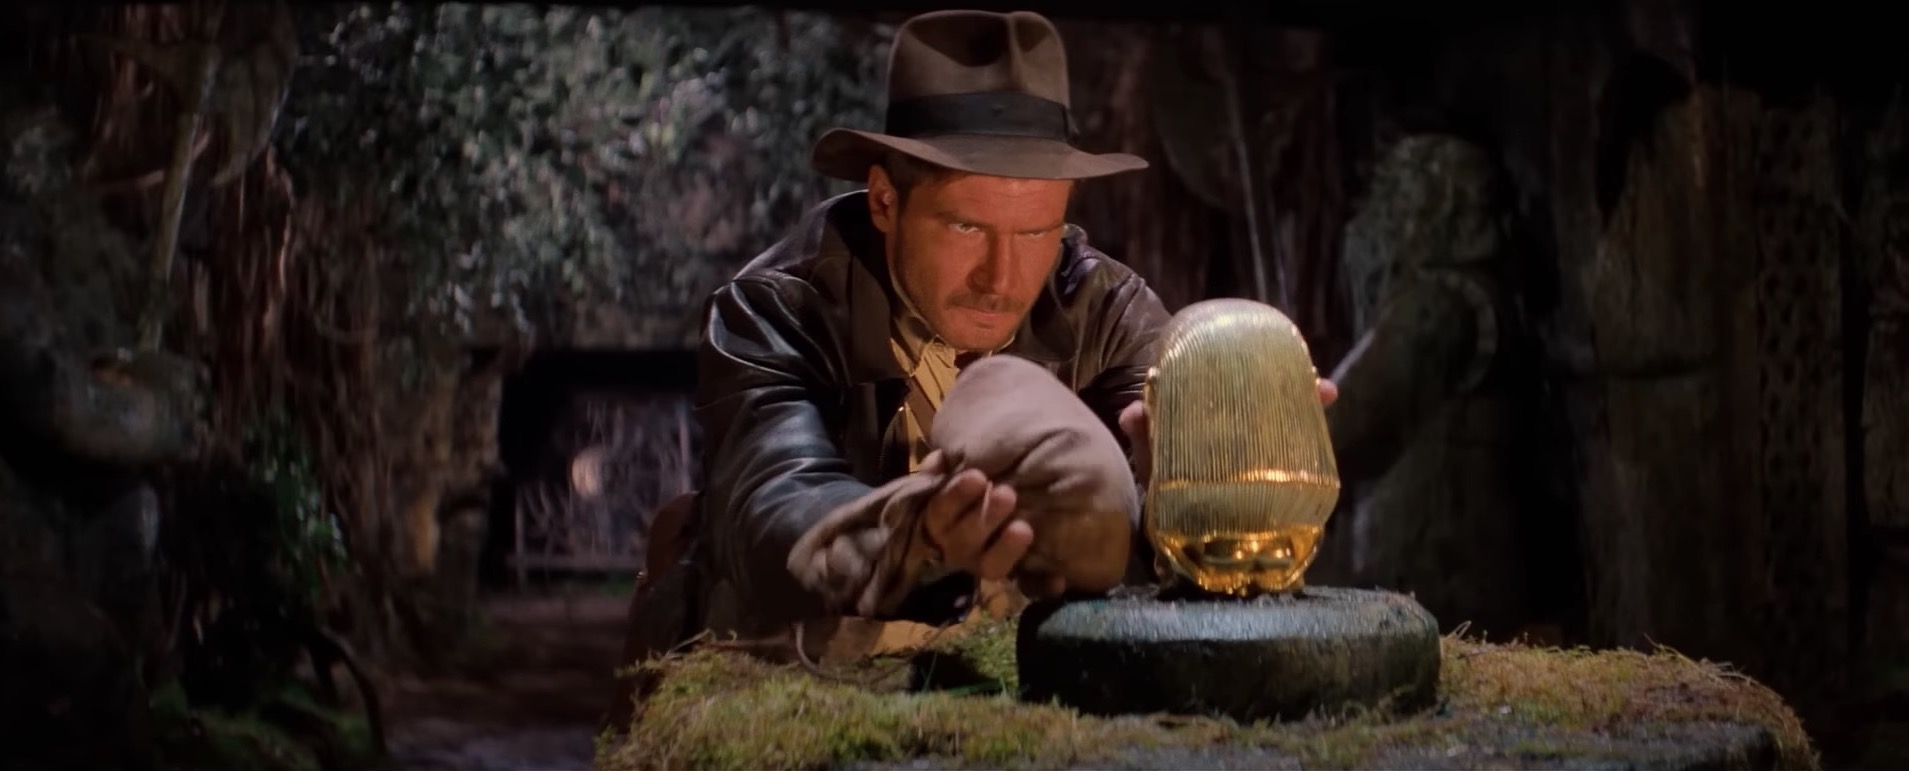 Indiana Jones : on a classé tous les films de la saga du pire au meilleur